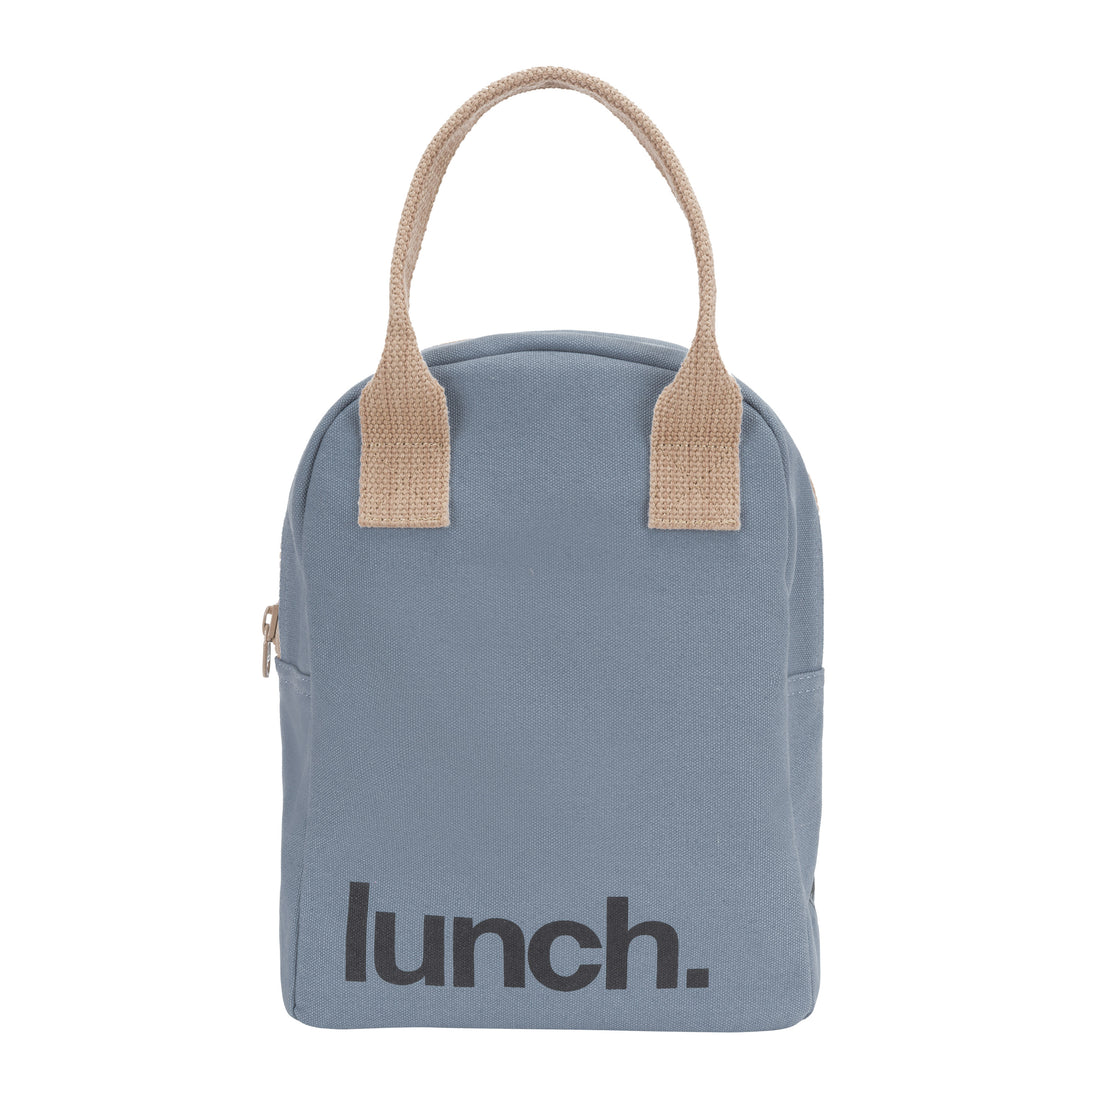 fluf-zipper-lunch-bag-blue-tan- (1)